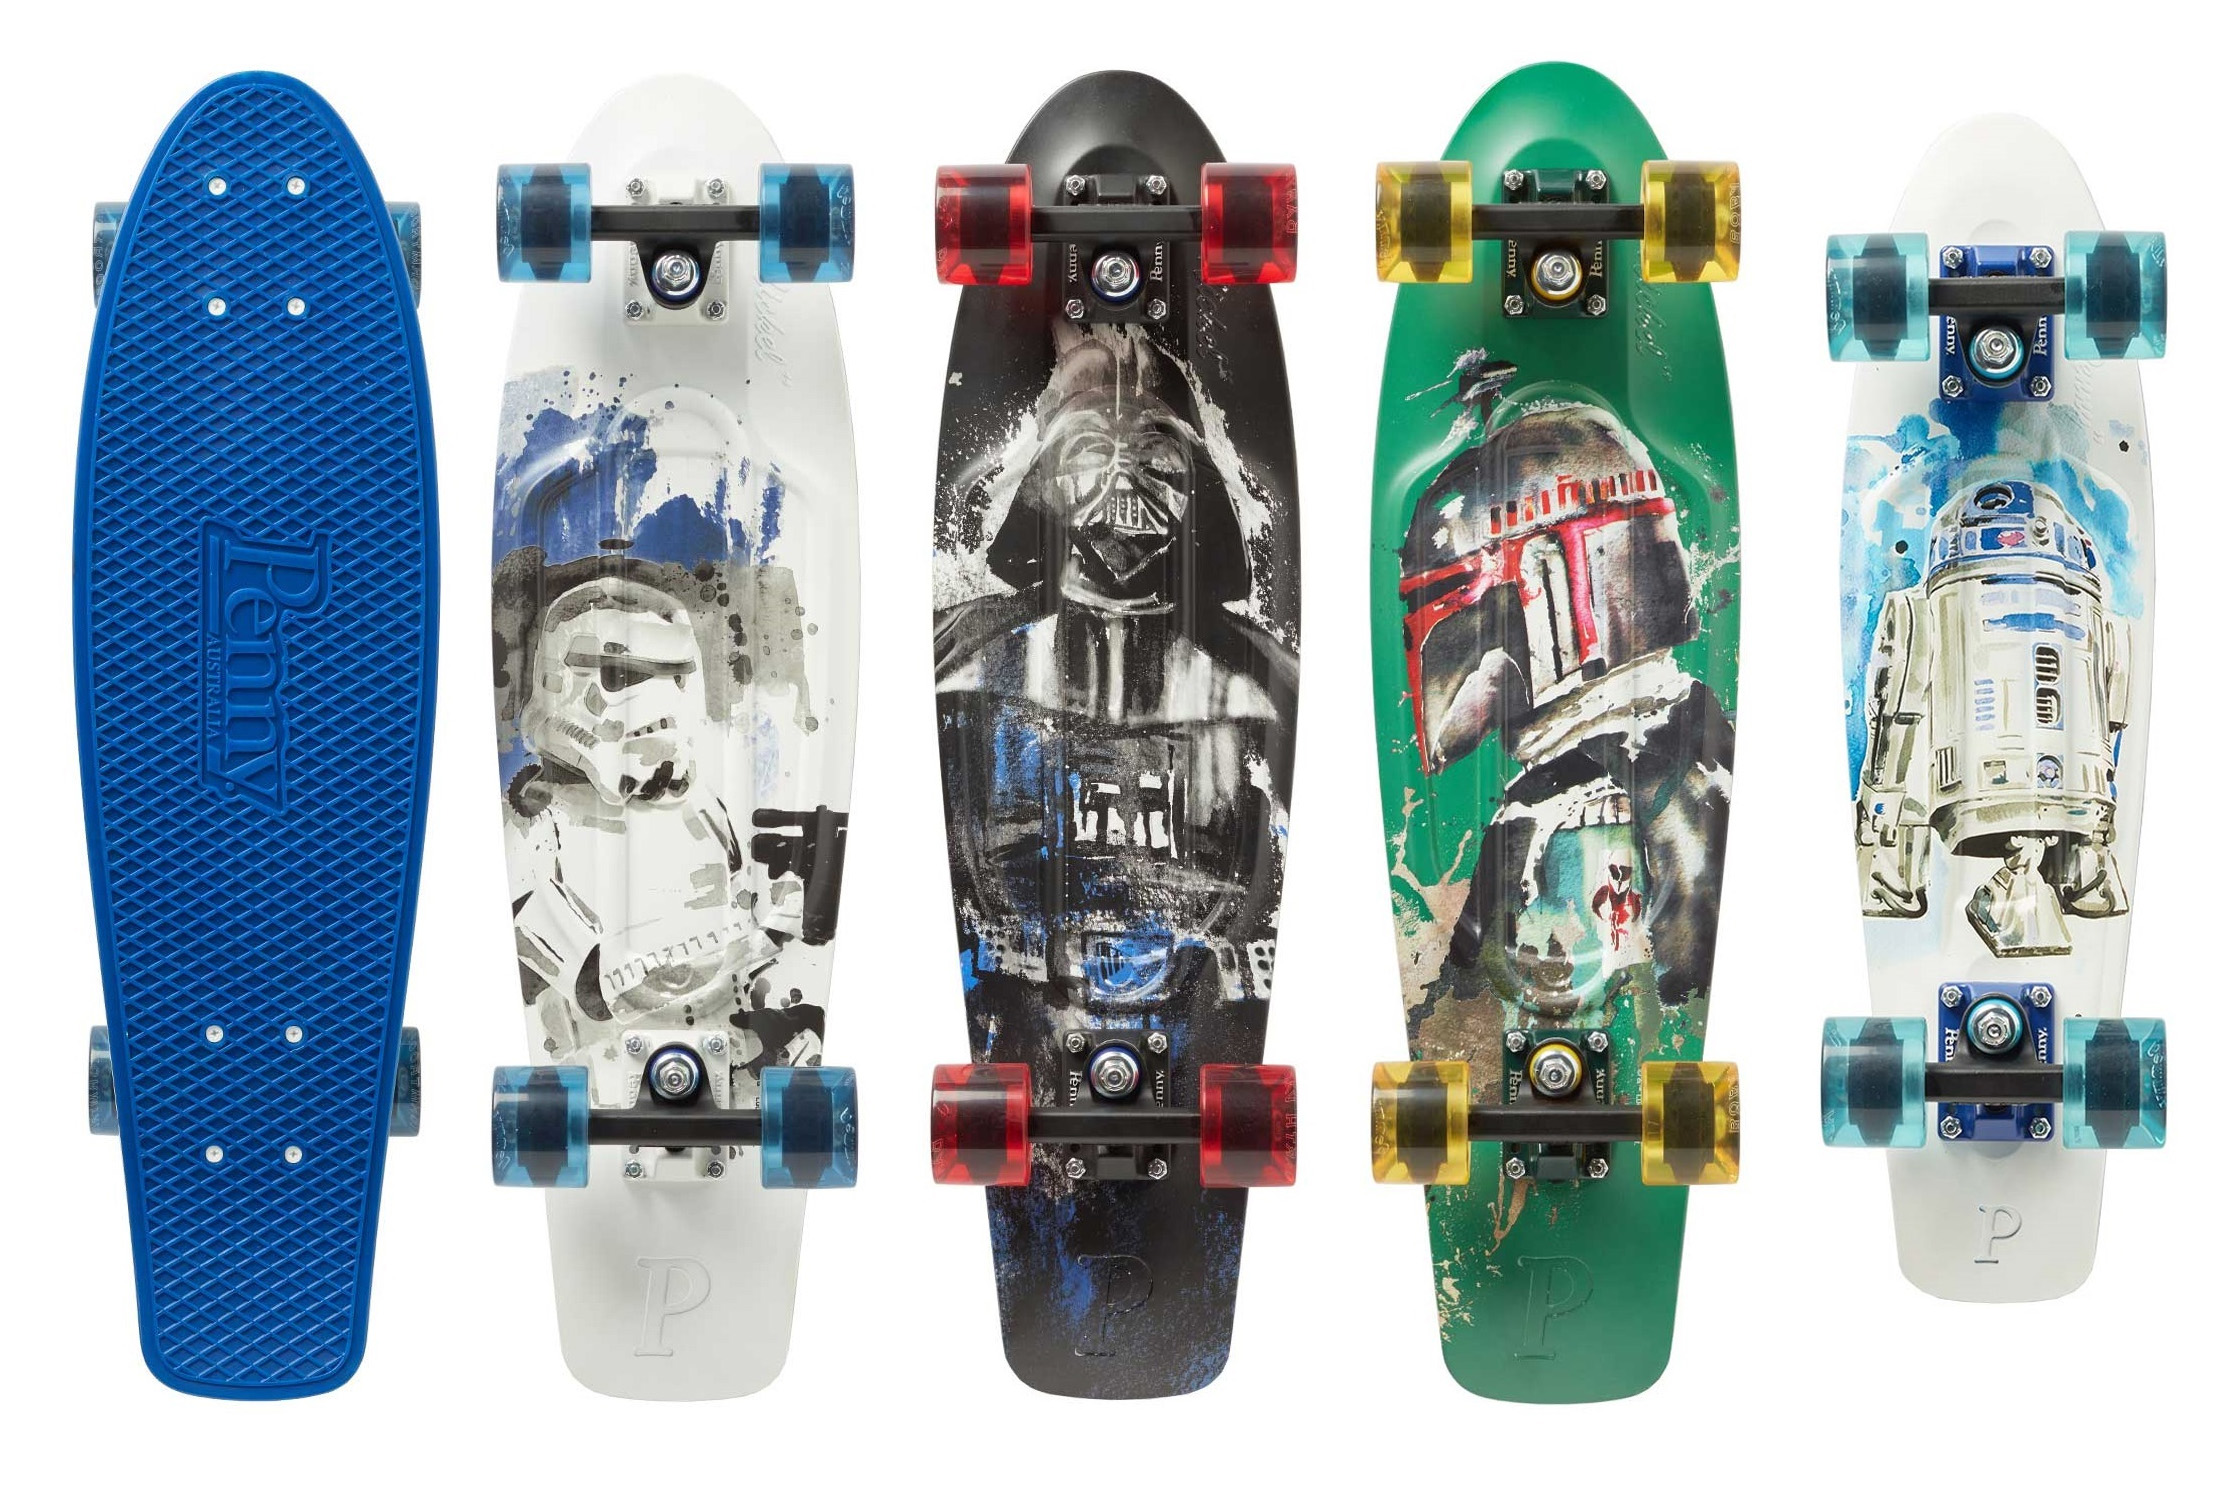 Star Wars Skateboards by Penny Skateboards - SWNZ, Star Wars New